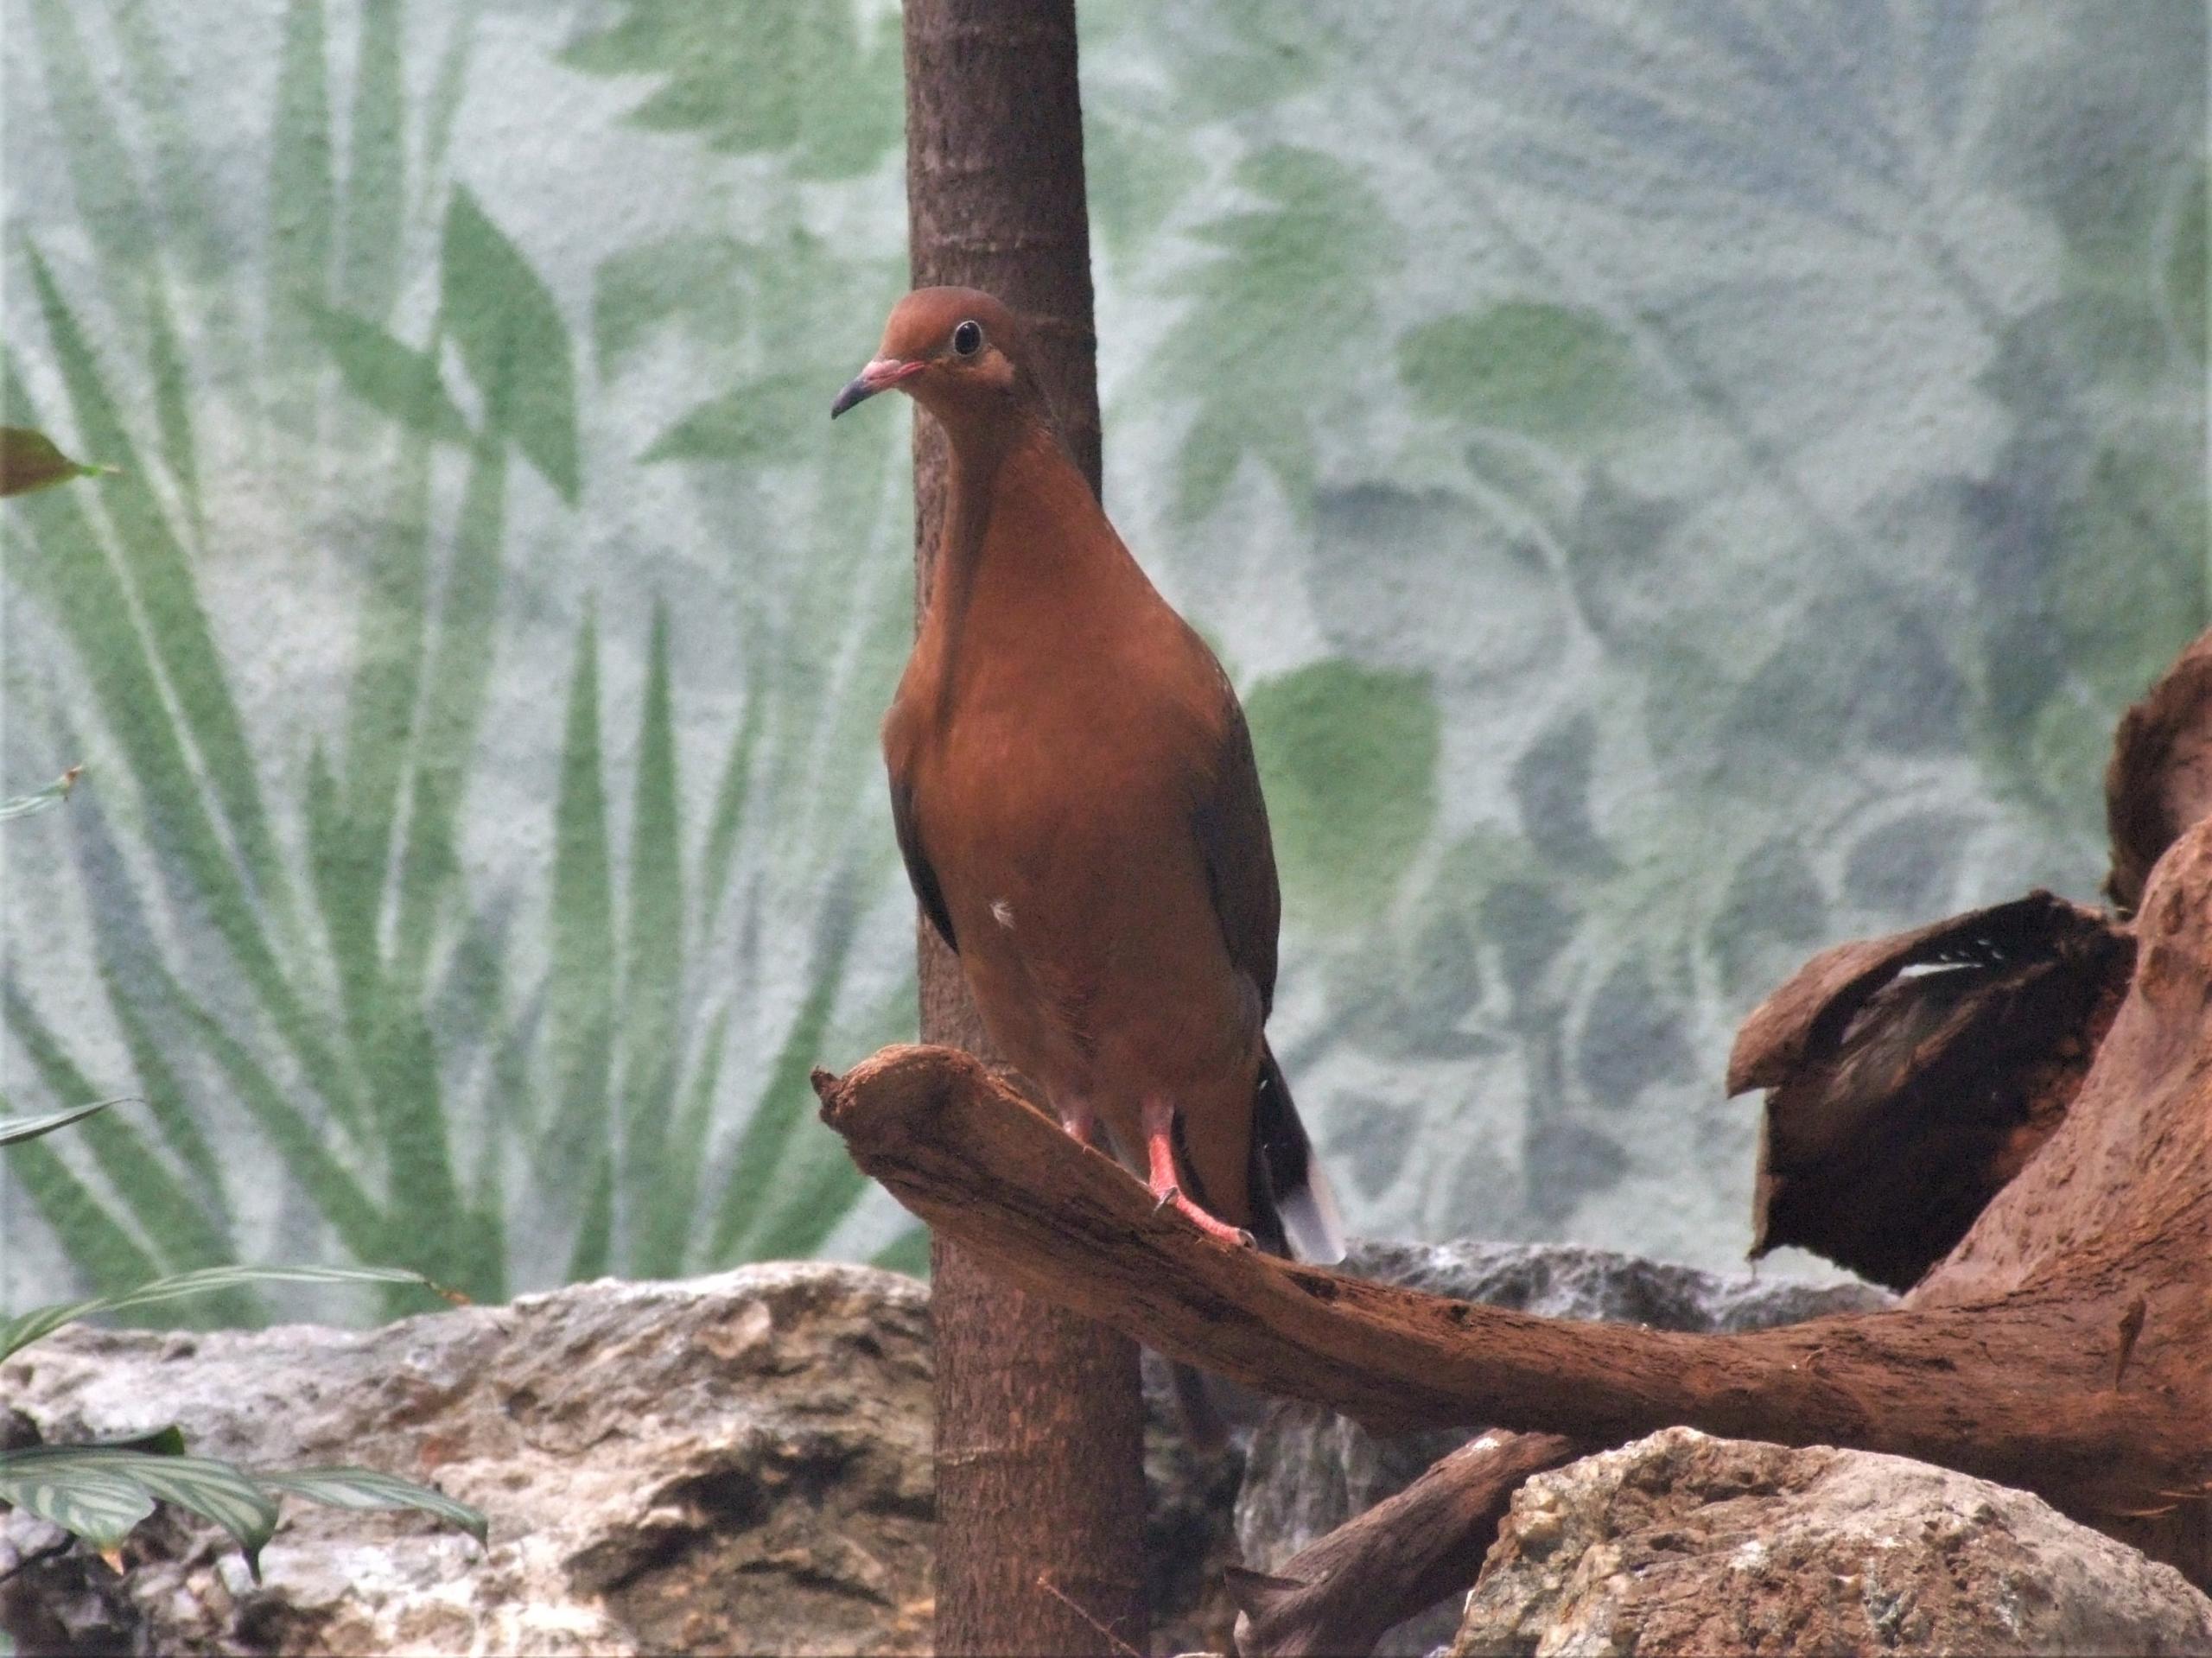 In ihrem natürlichen Verbreitungsgebiet wurde die Socorrotaube (Zenaida graysoni) bereits ausgerottet. Überlebt hat die Art in Zoos, die sich seither bemühen, die Art zu erhalten und Vorbereitung für eine Wiederansiedlung treffen.